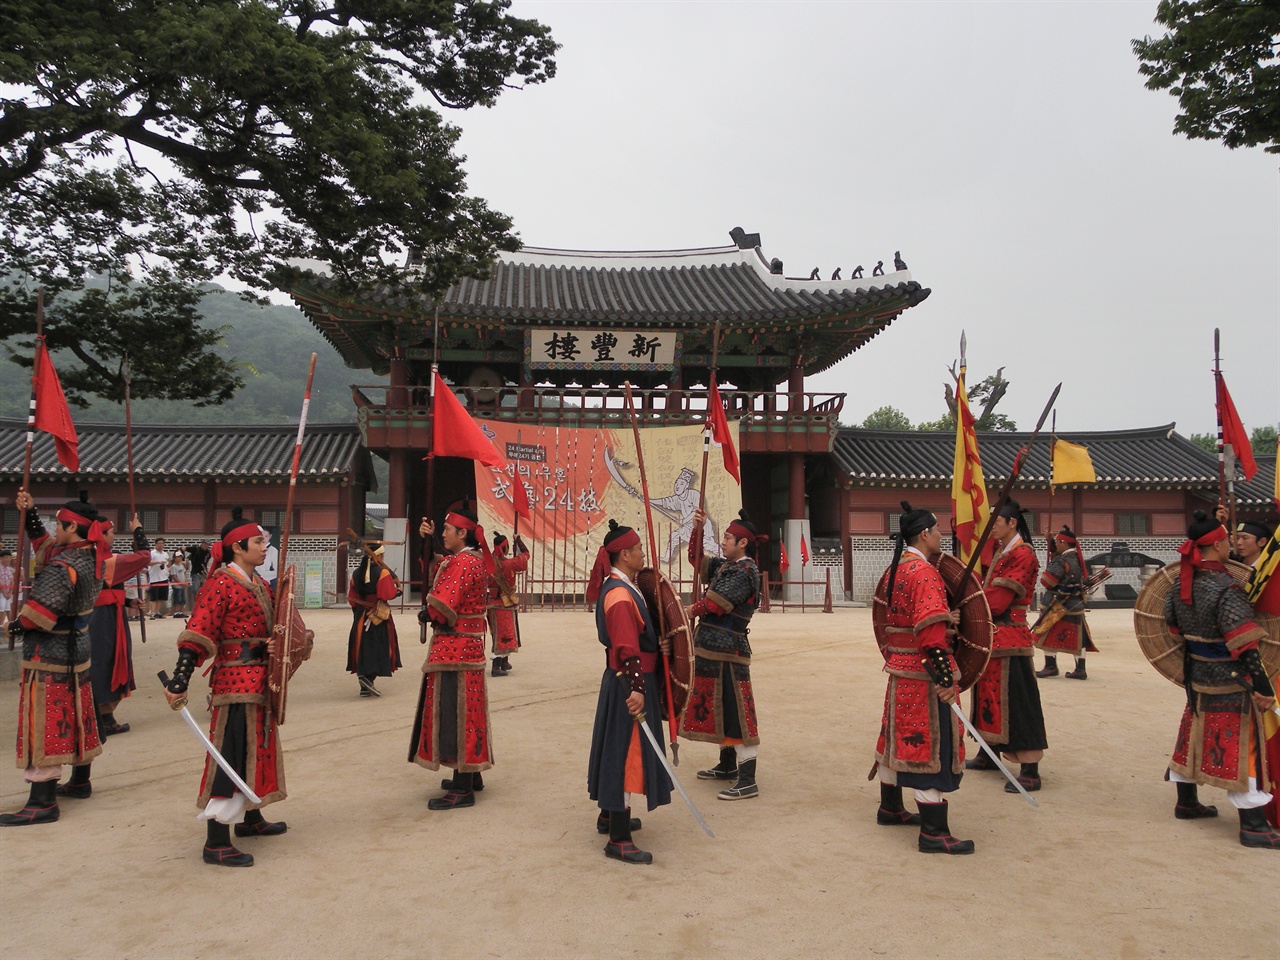 옛날 군인들의 훈련 모습. 경기도 수원시 화성행궁에서 찍은 사진. 